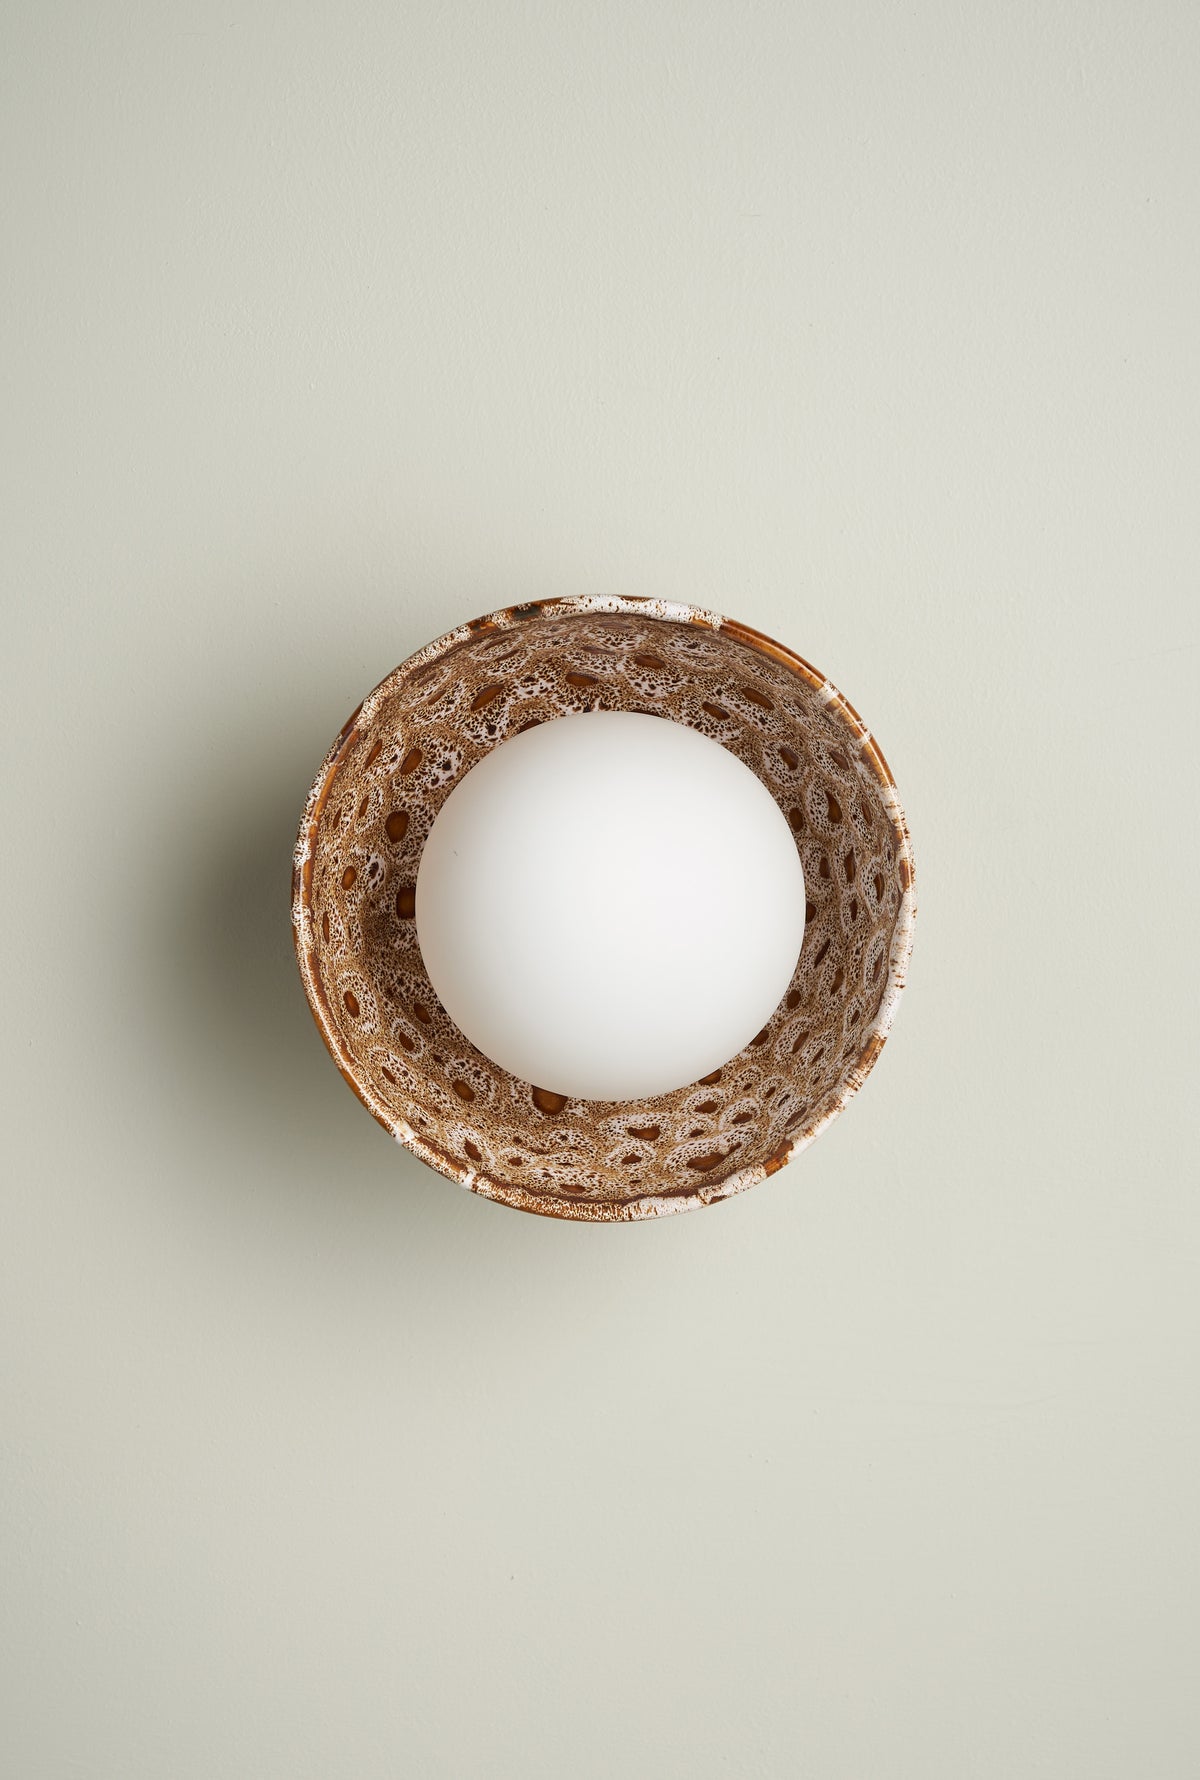 Ceramic Wall Bowl Sconce Light / White Ochre